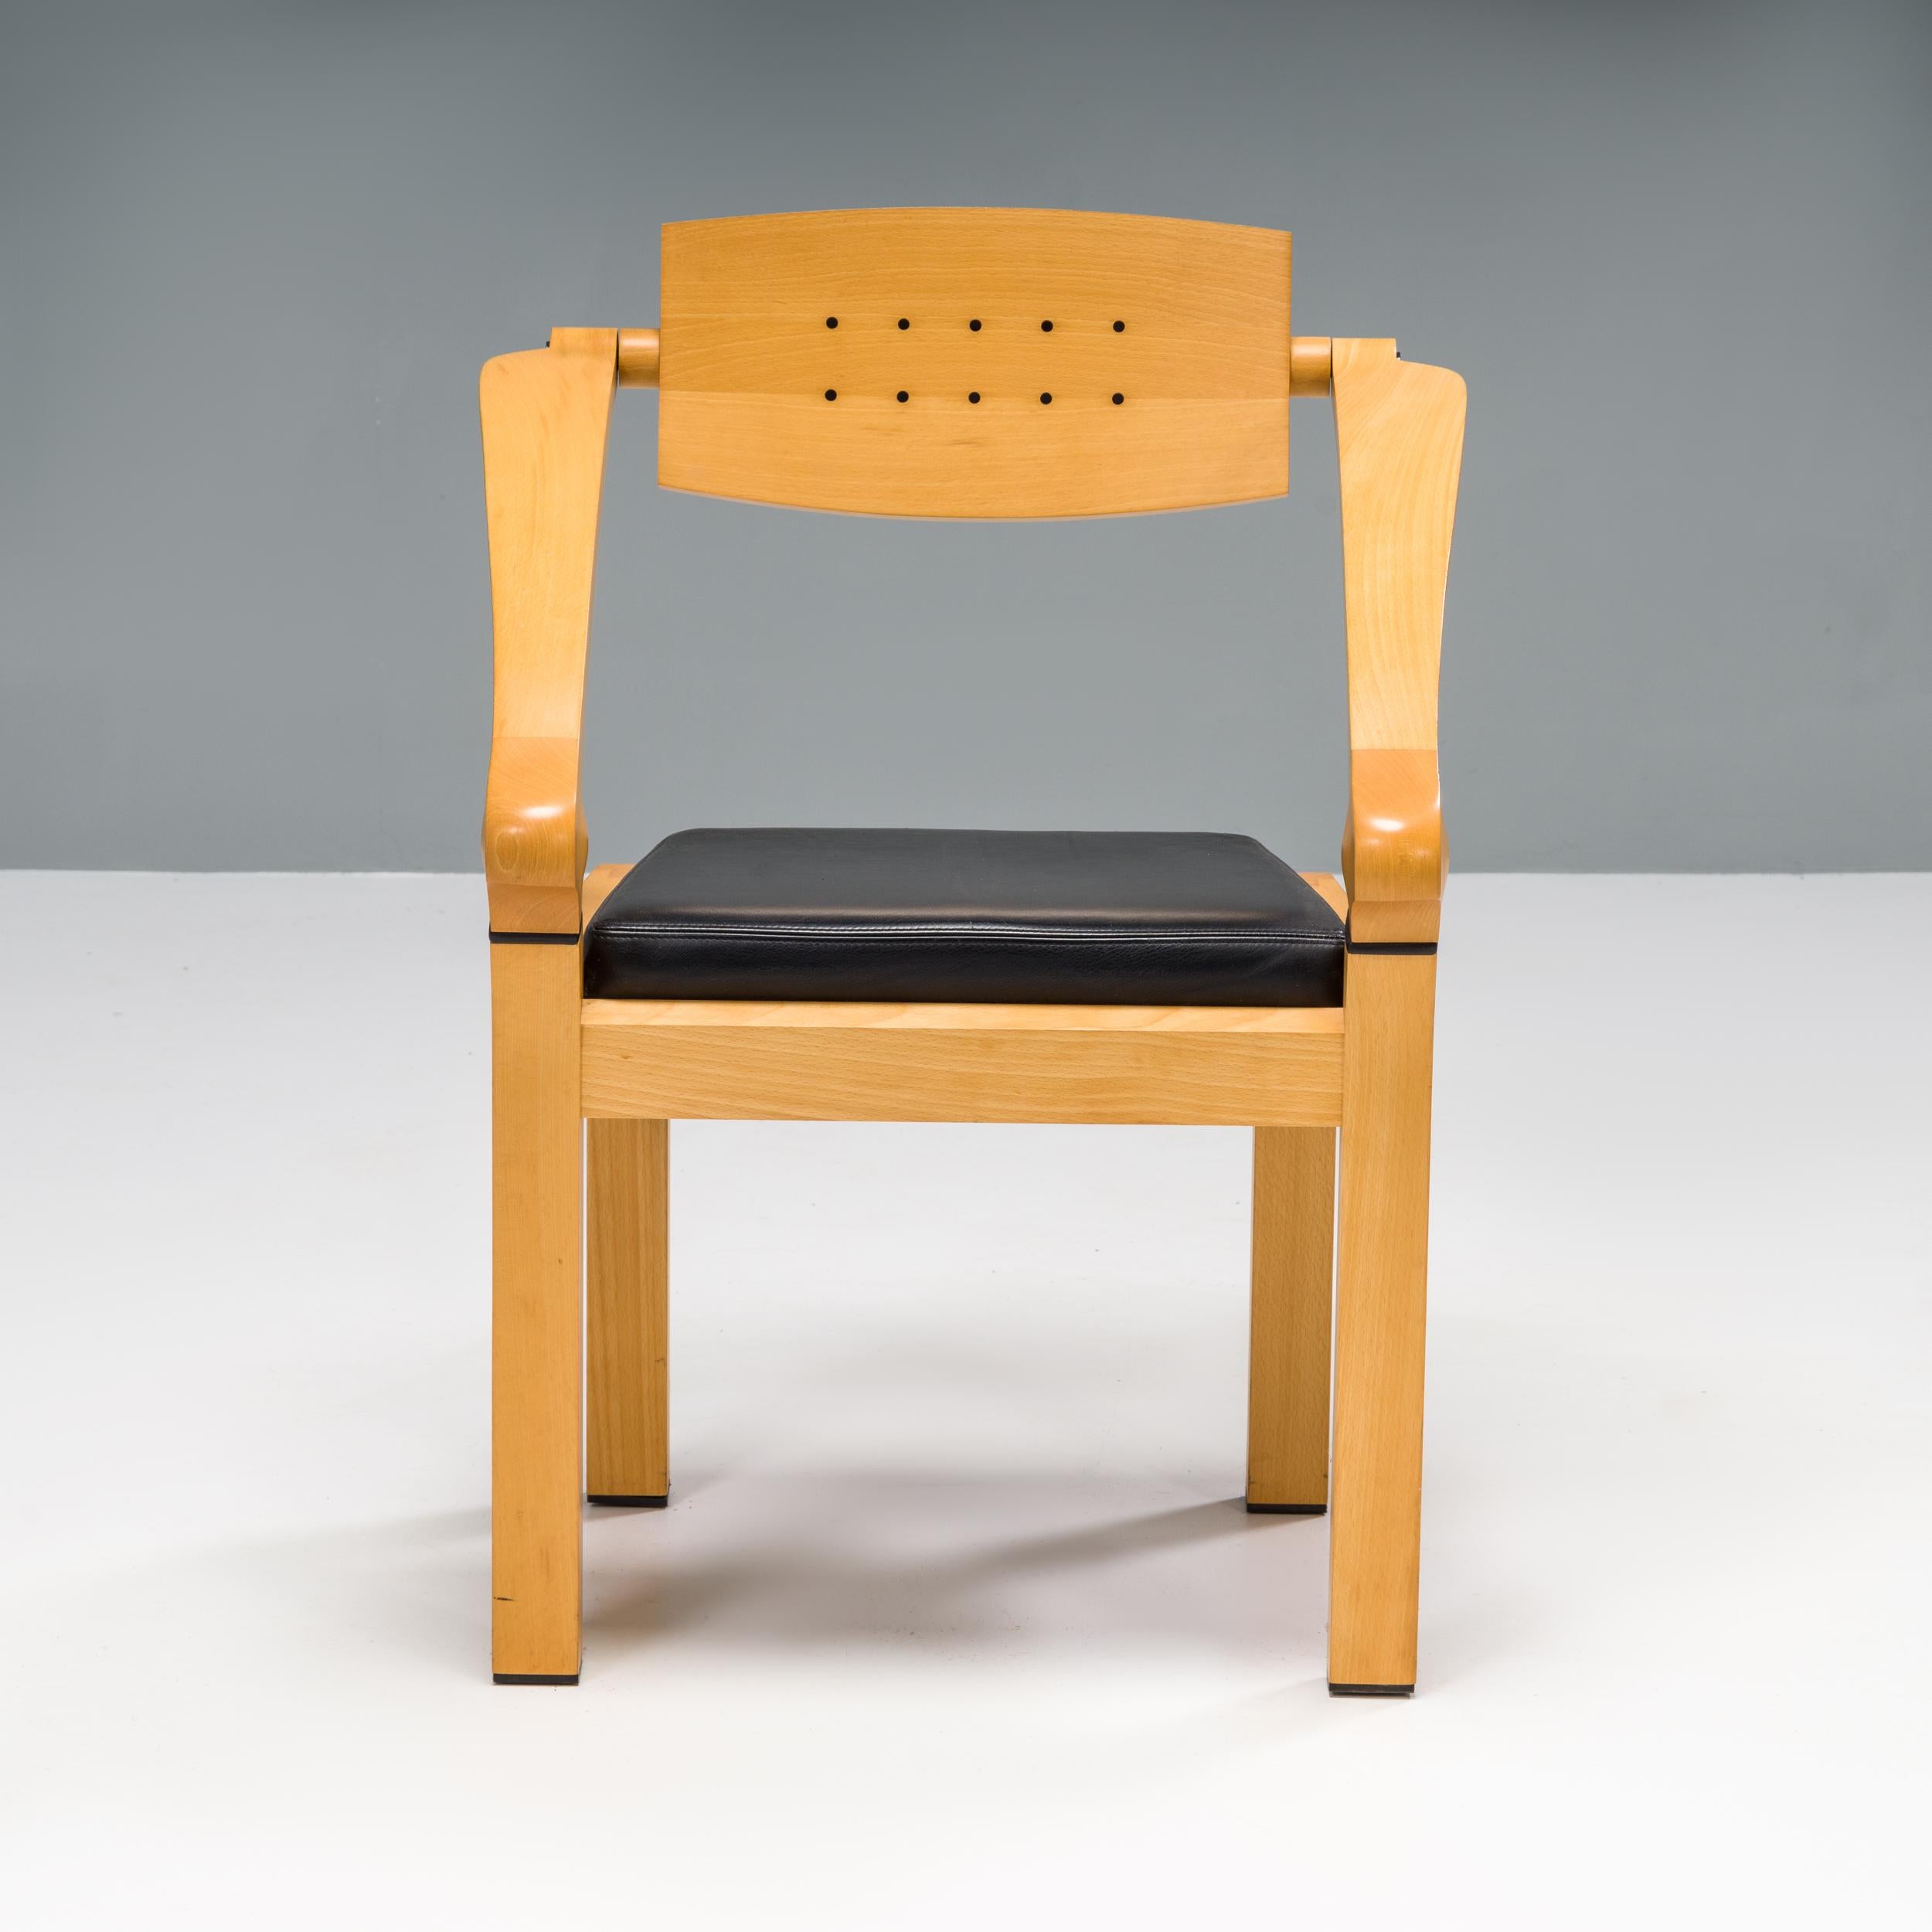 Der Bürostuhl Spring wurde 1994 von Massimo Scolari für Giorgetti passend zum legendären Schreibtisch Zeno entworfen.

Der aus poliertem Buchenholz gefertigte Stuhl verfügt über Ebenholzeinsätze an der Rückenlehne und den Armlehnen, die den mit